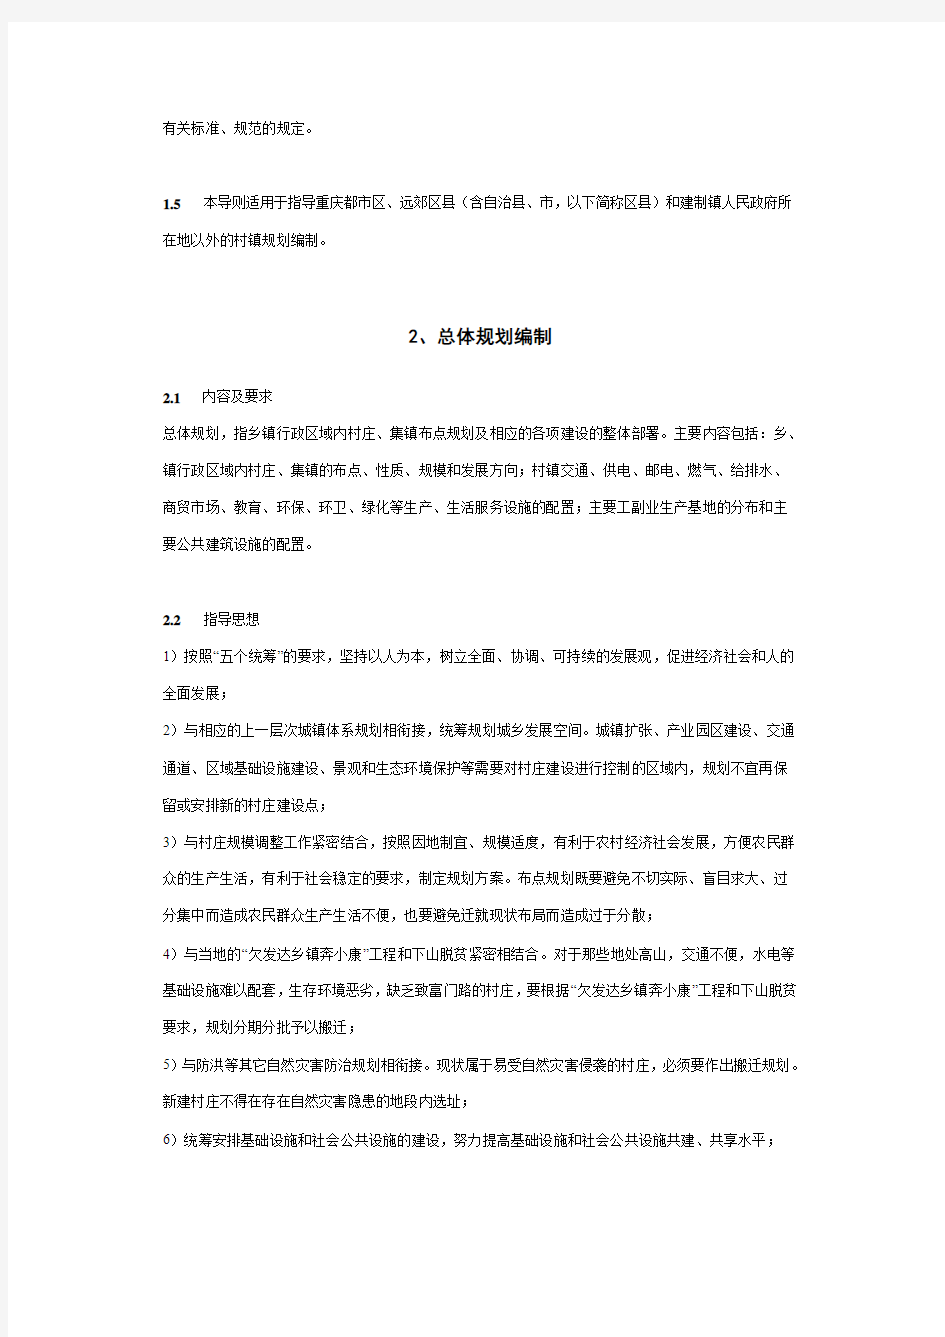 重庆市村镇规划编制技术导则(征求意见稿)